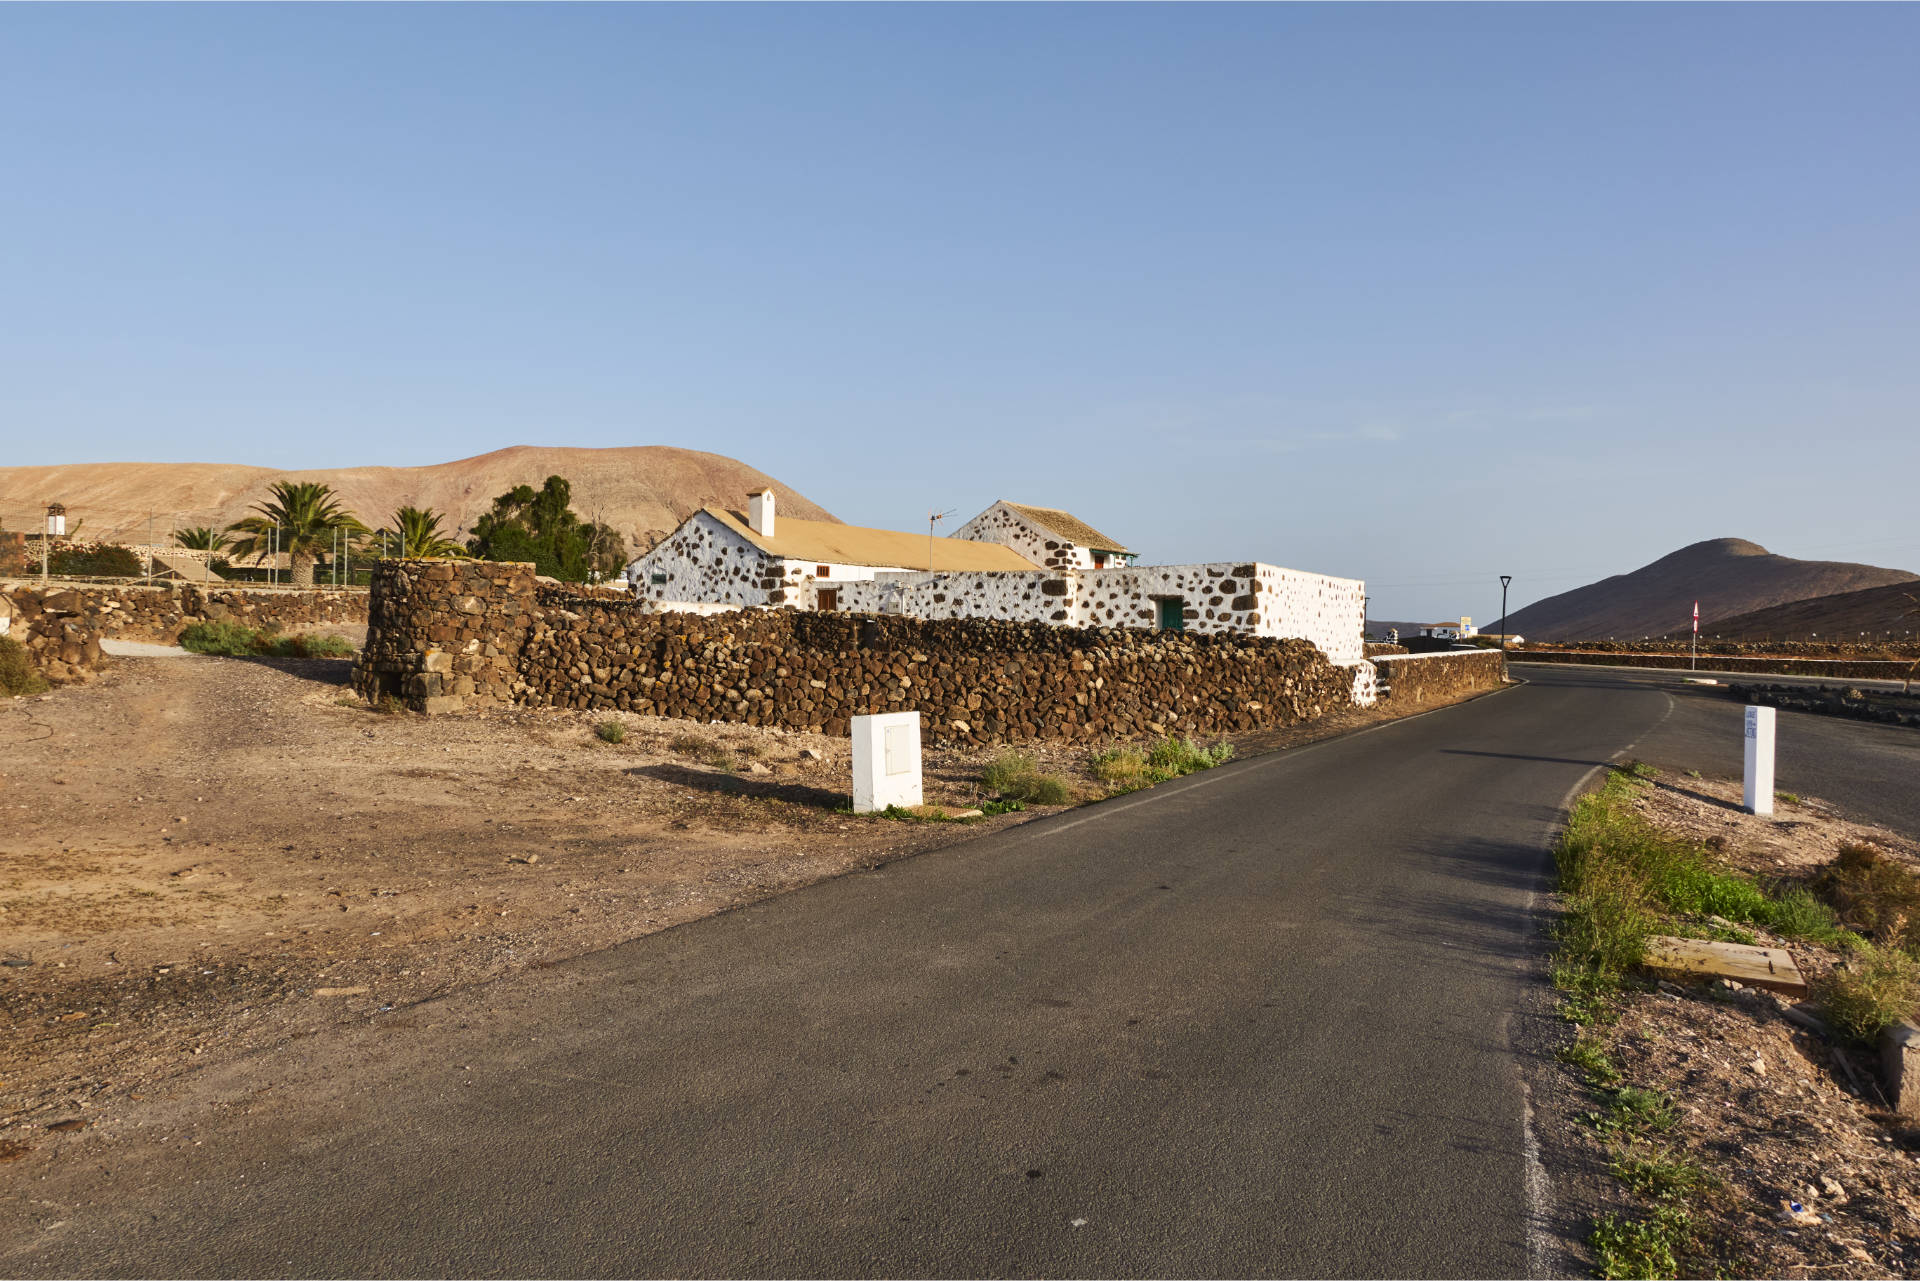 Über den GR-131 von Villaverde nach Lajares Fuerteventura.